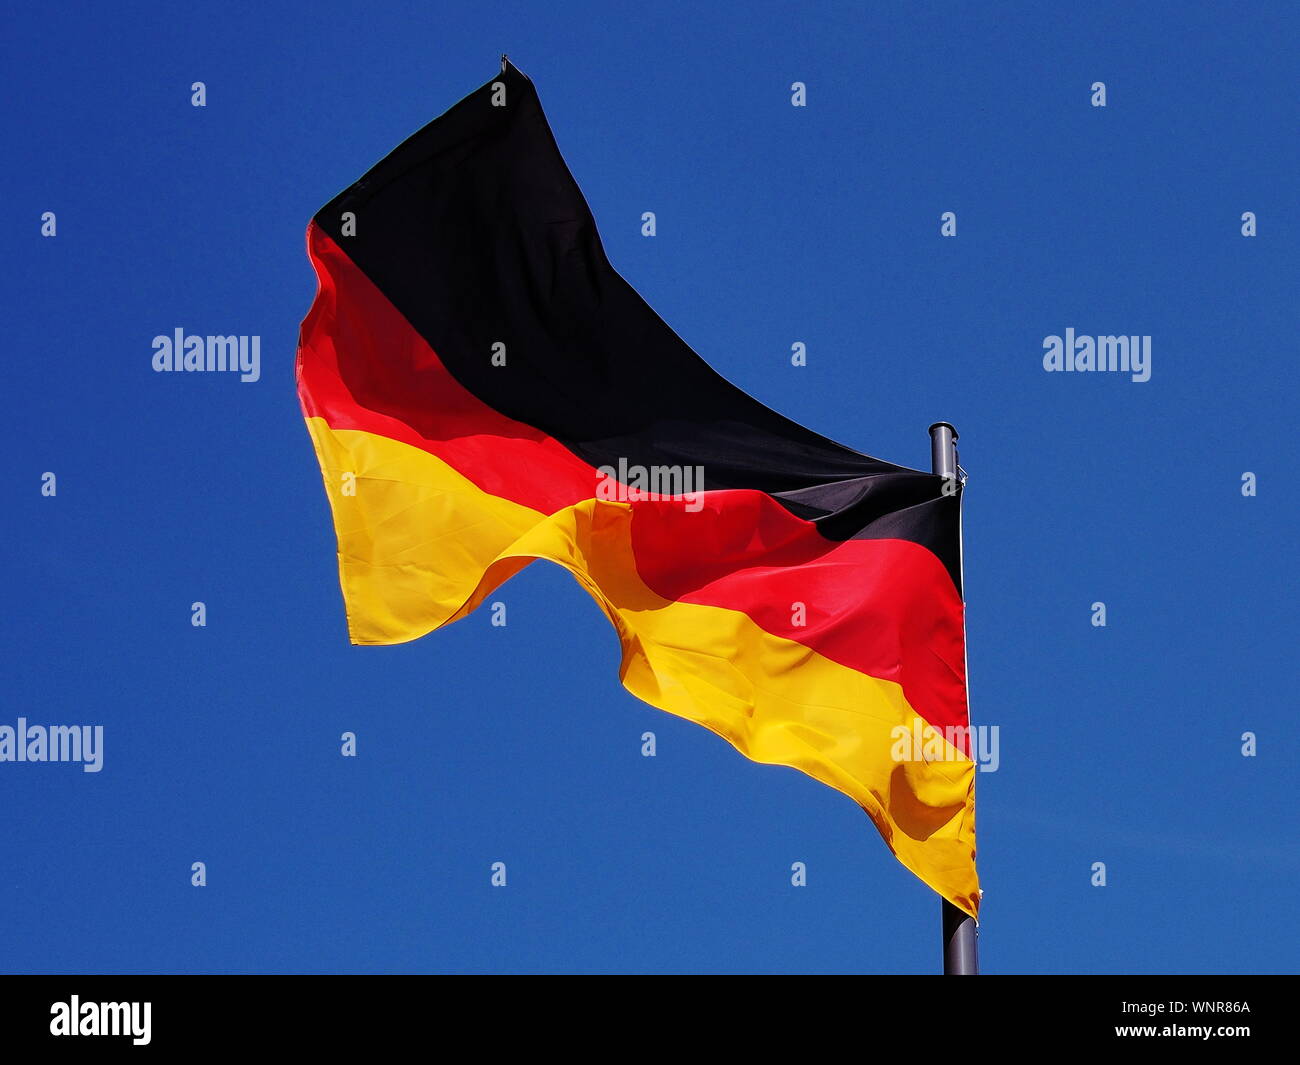 Bandera Alemana en gusty condiciones de viento bajo un cielo azul Foto de stock